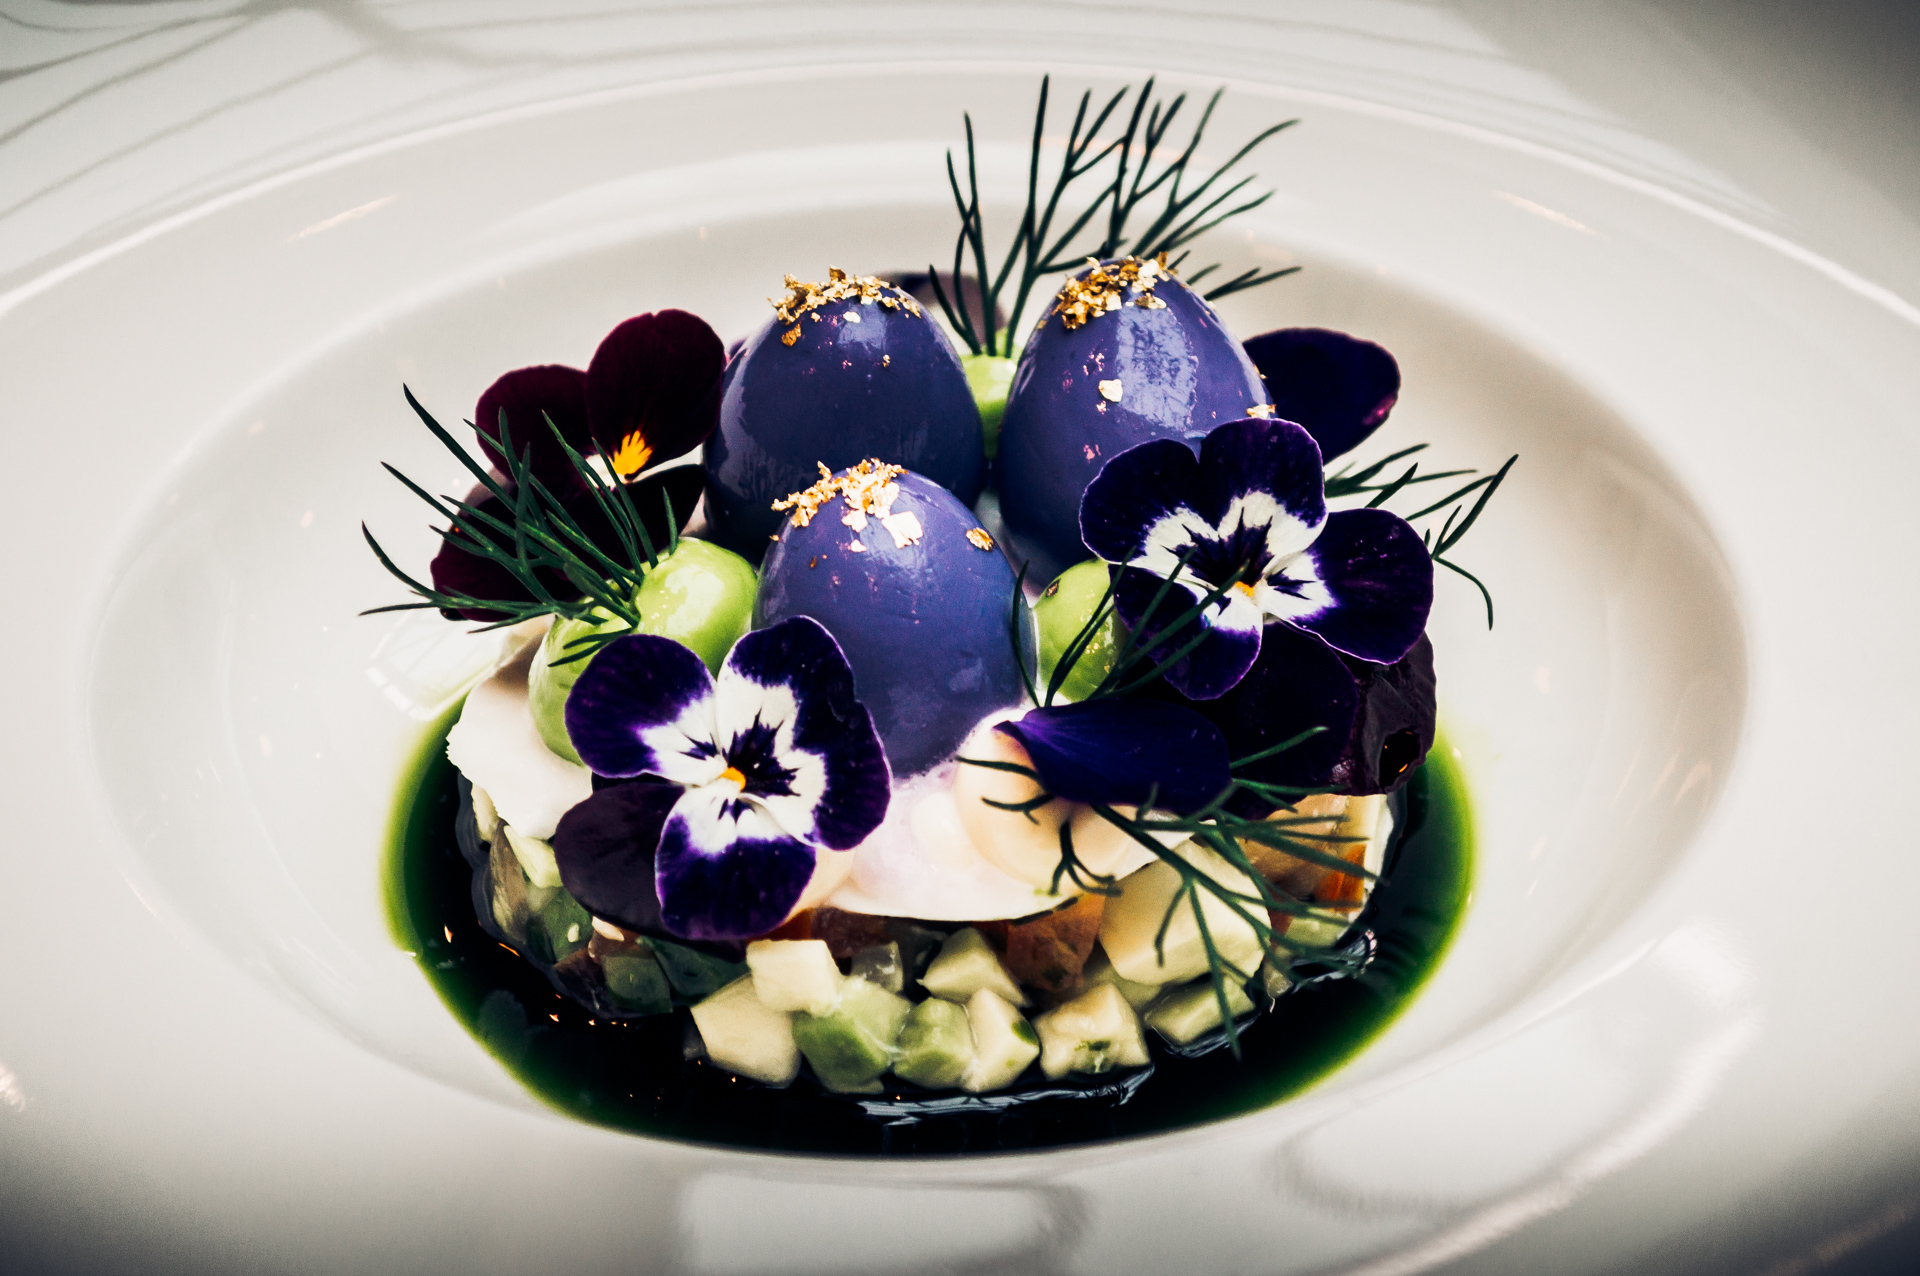 cheffins-beaumont-jersey-starter-purple-dragons-eggs